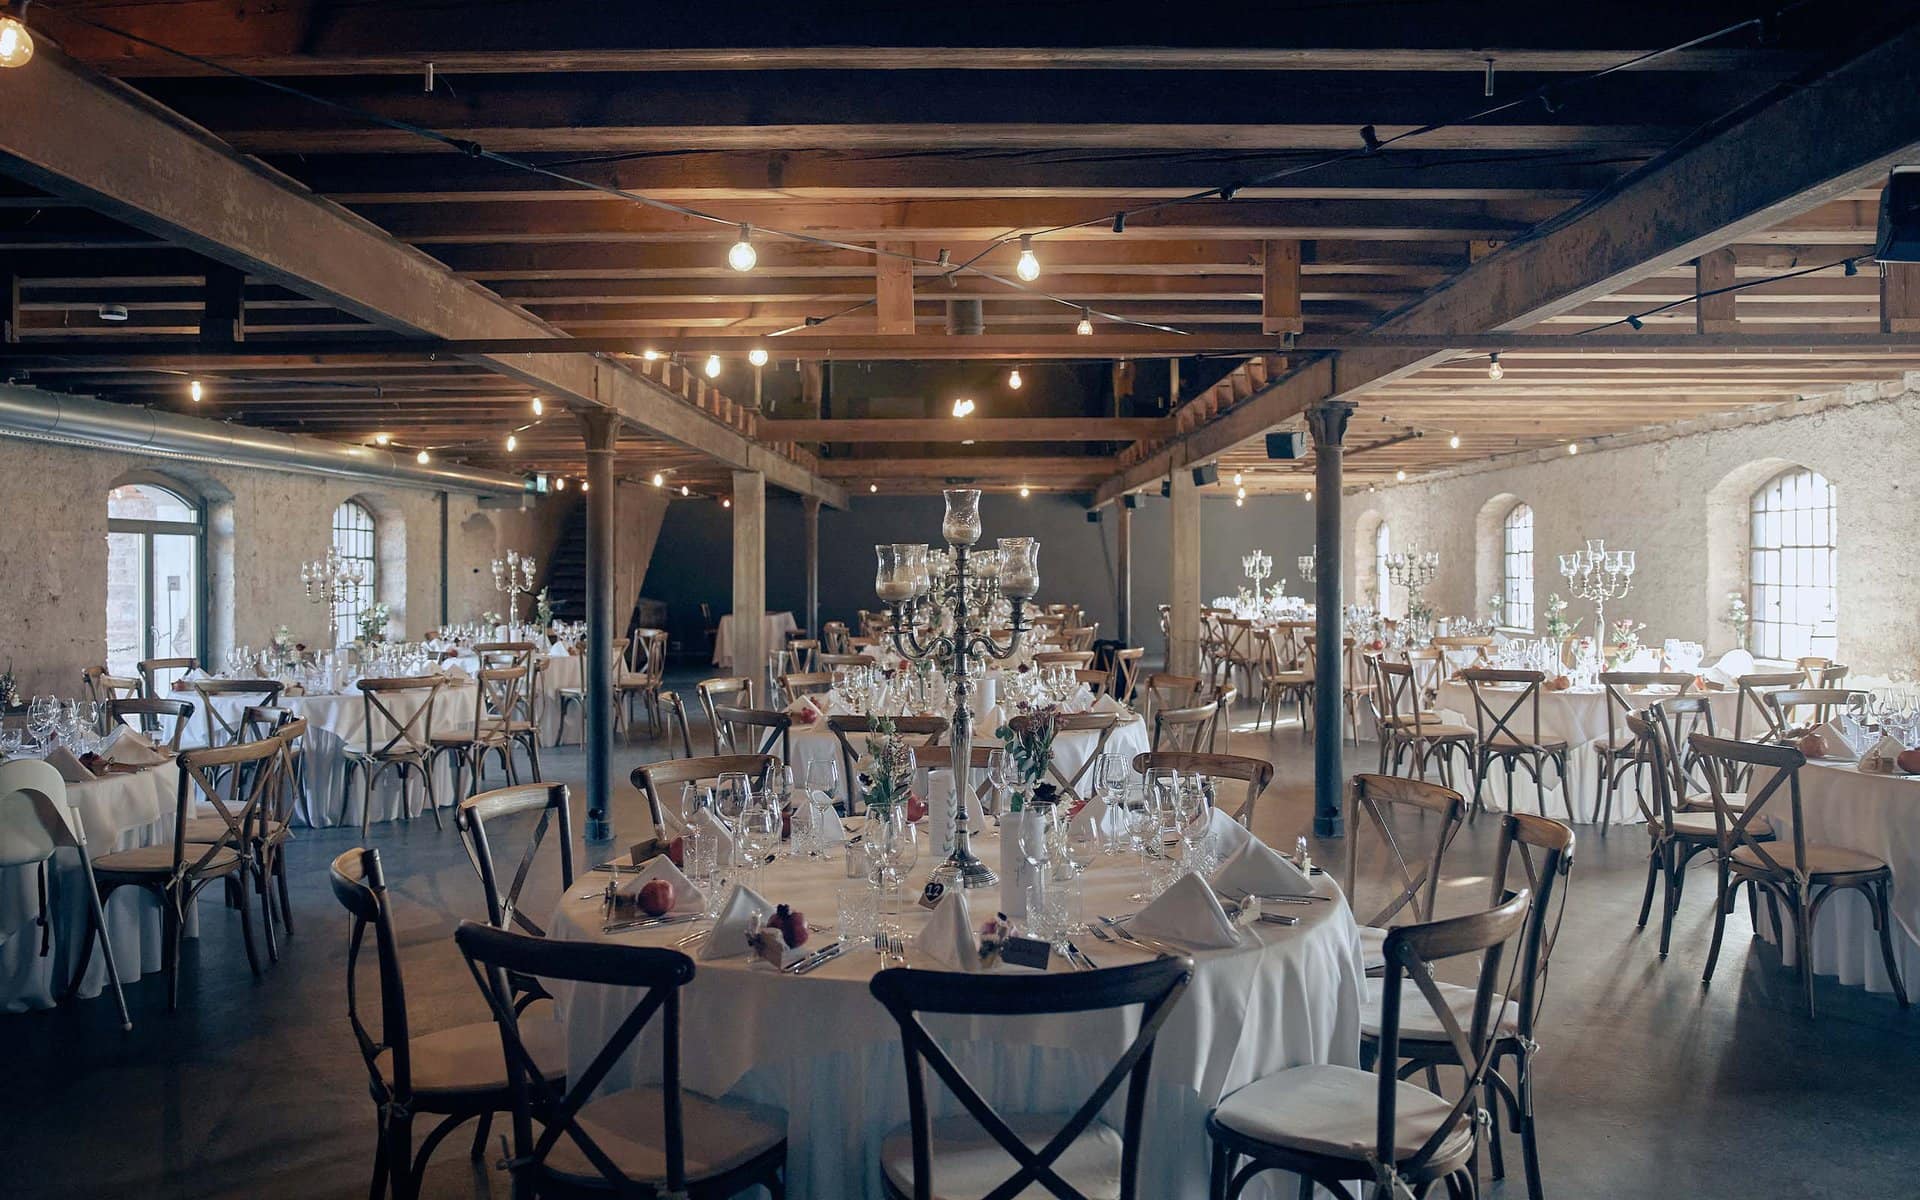 Elegantes Festsaal-Set für eine Veranstaltung im Eichenstolz in Ladenburg mit dekorierten Tischen und Holzbalken.